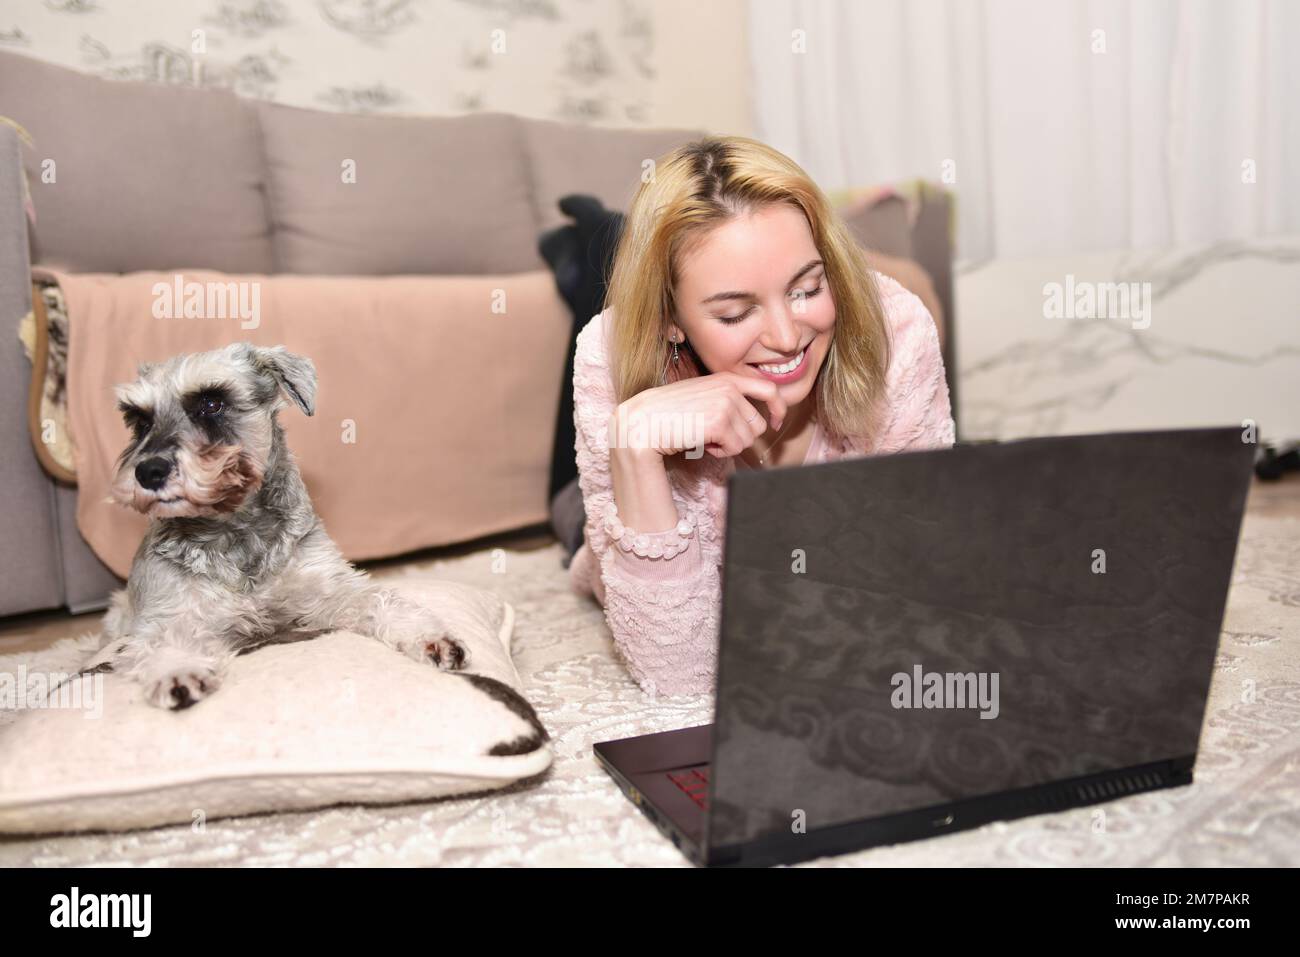 Eine junge blonde Frau lacht zu Hause mit einem Hund, während sie mit jemandem über ein Videogespräch auf einem Laptop chattet. Stockfoto